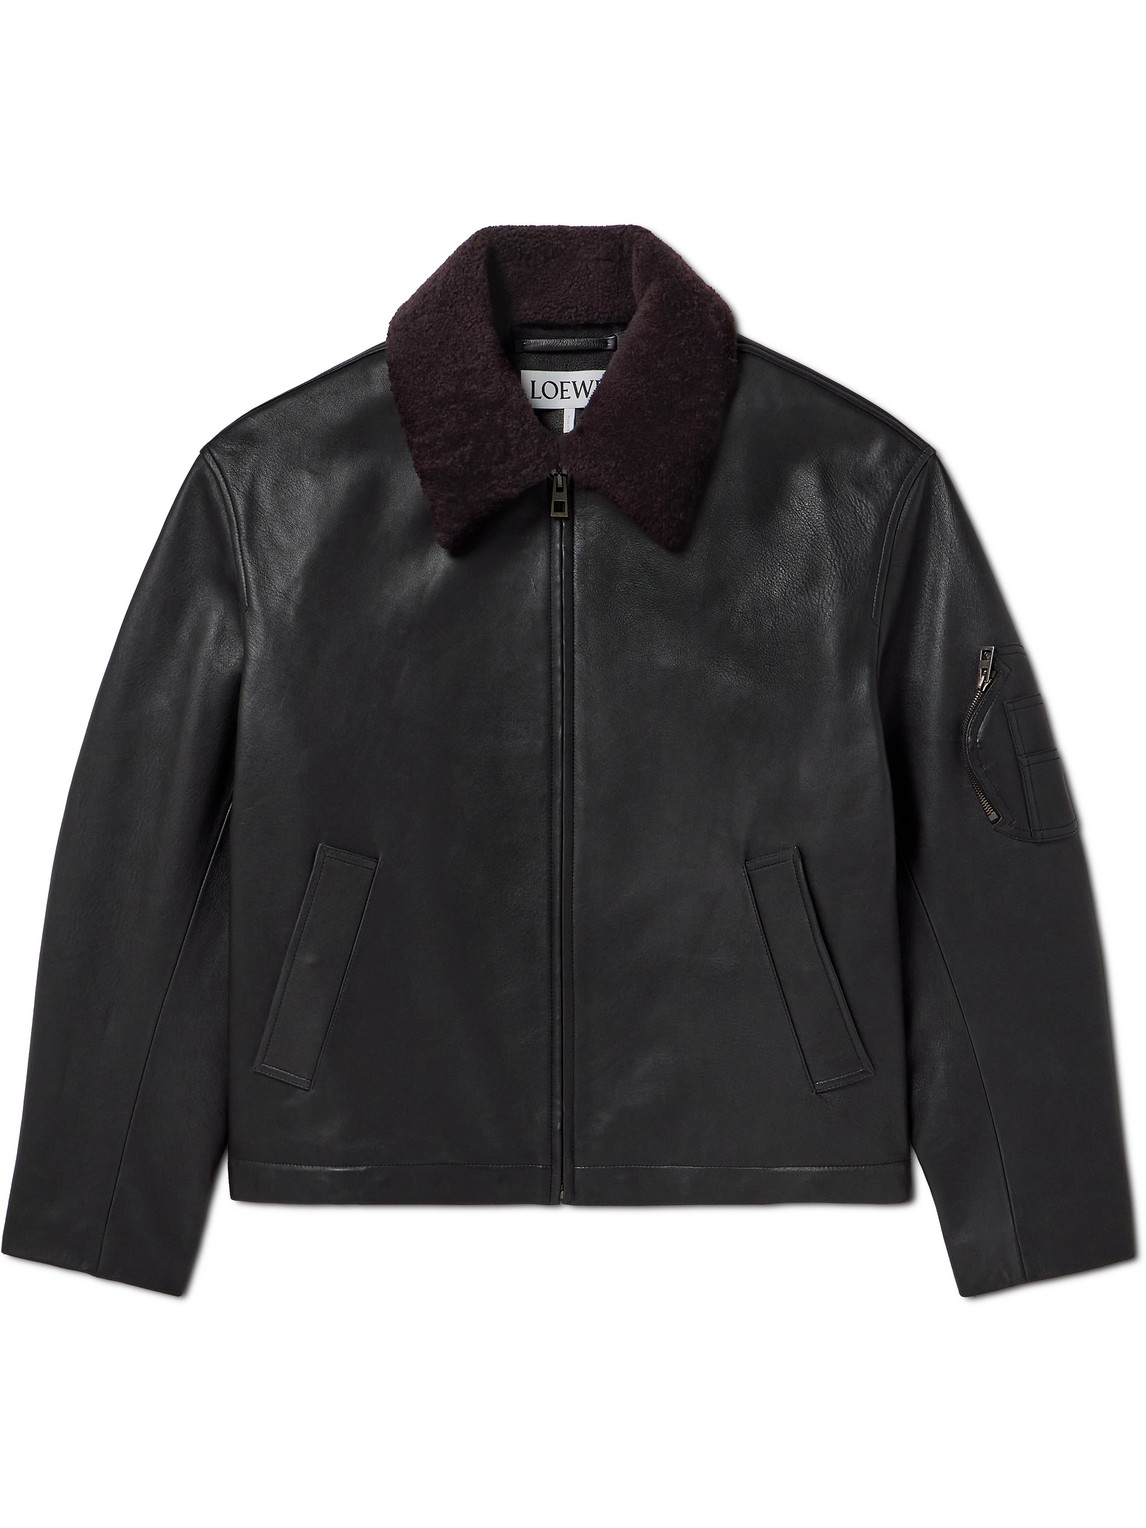 LOEWE - Appliquéd Shearling-Trimmed Leather Jacket - Men - Black - IT 56 von LOEWE